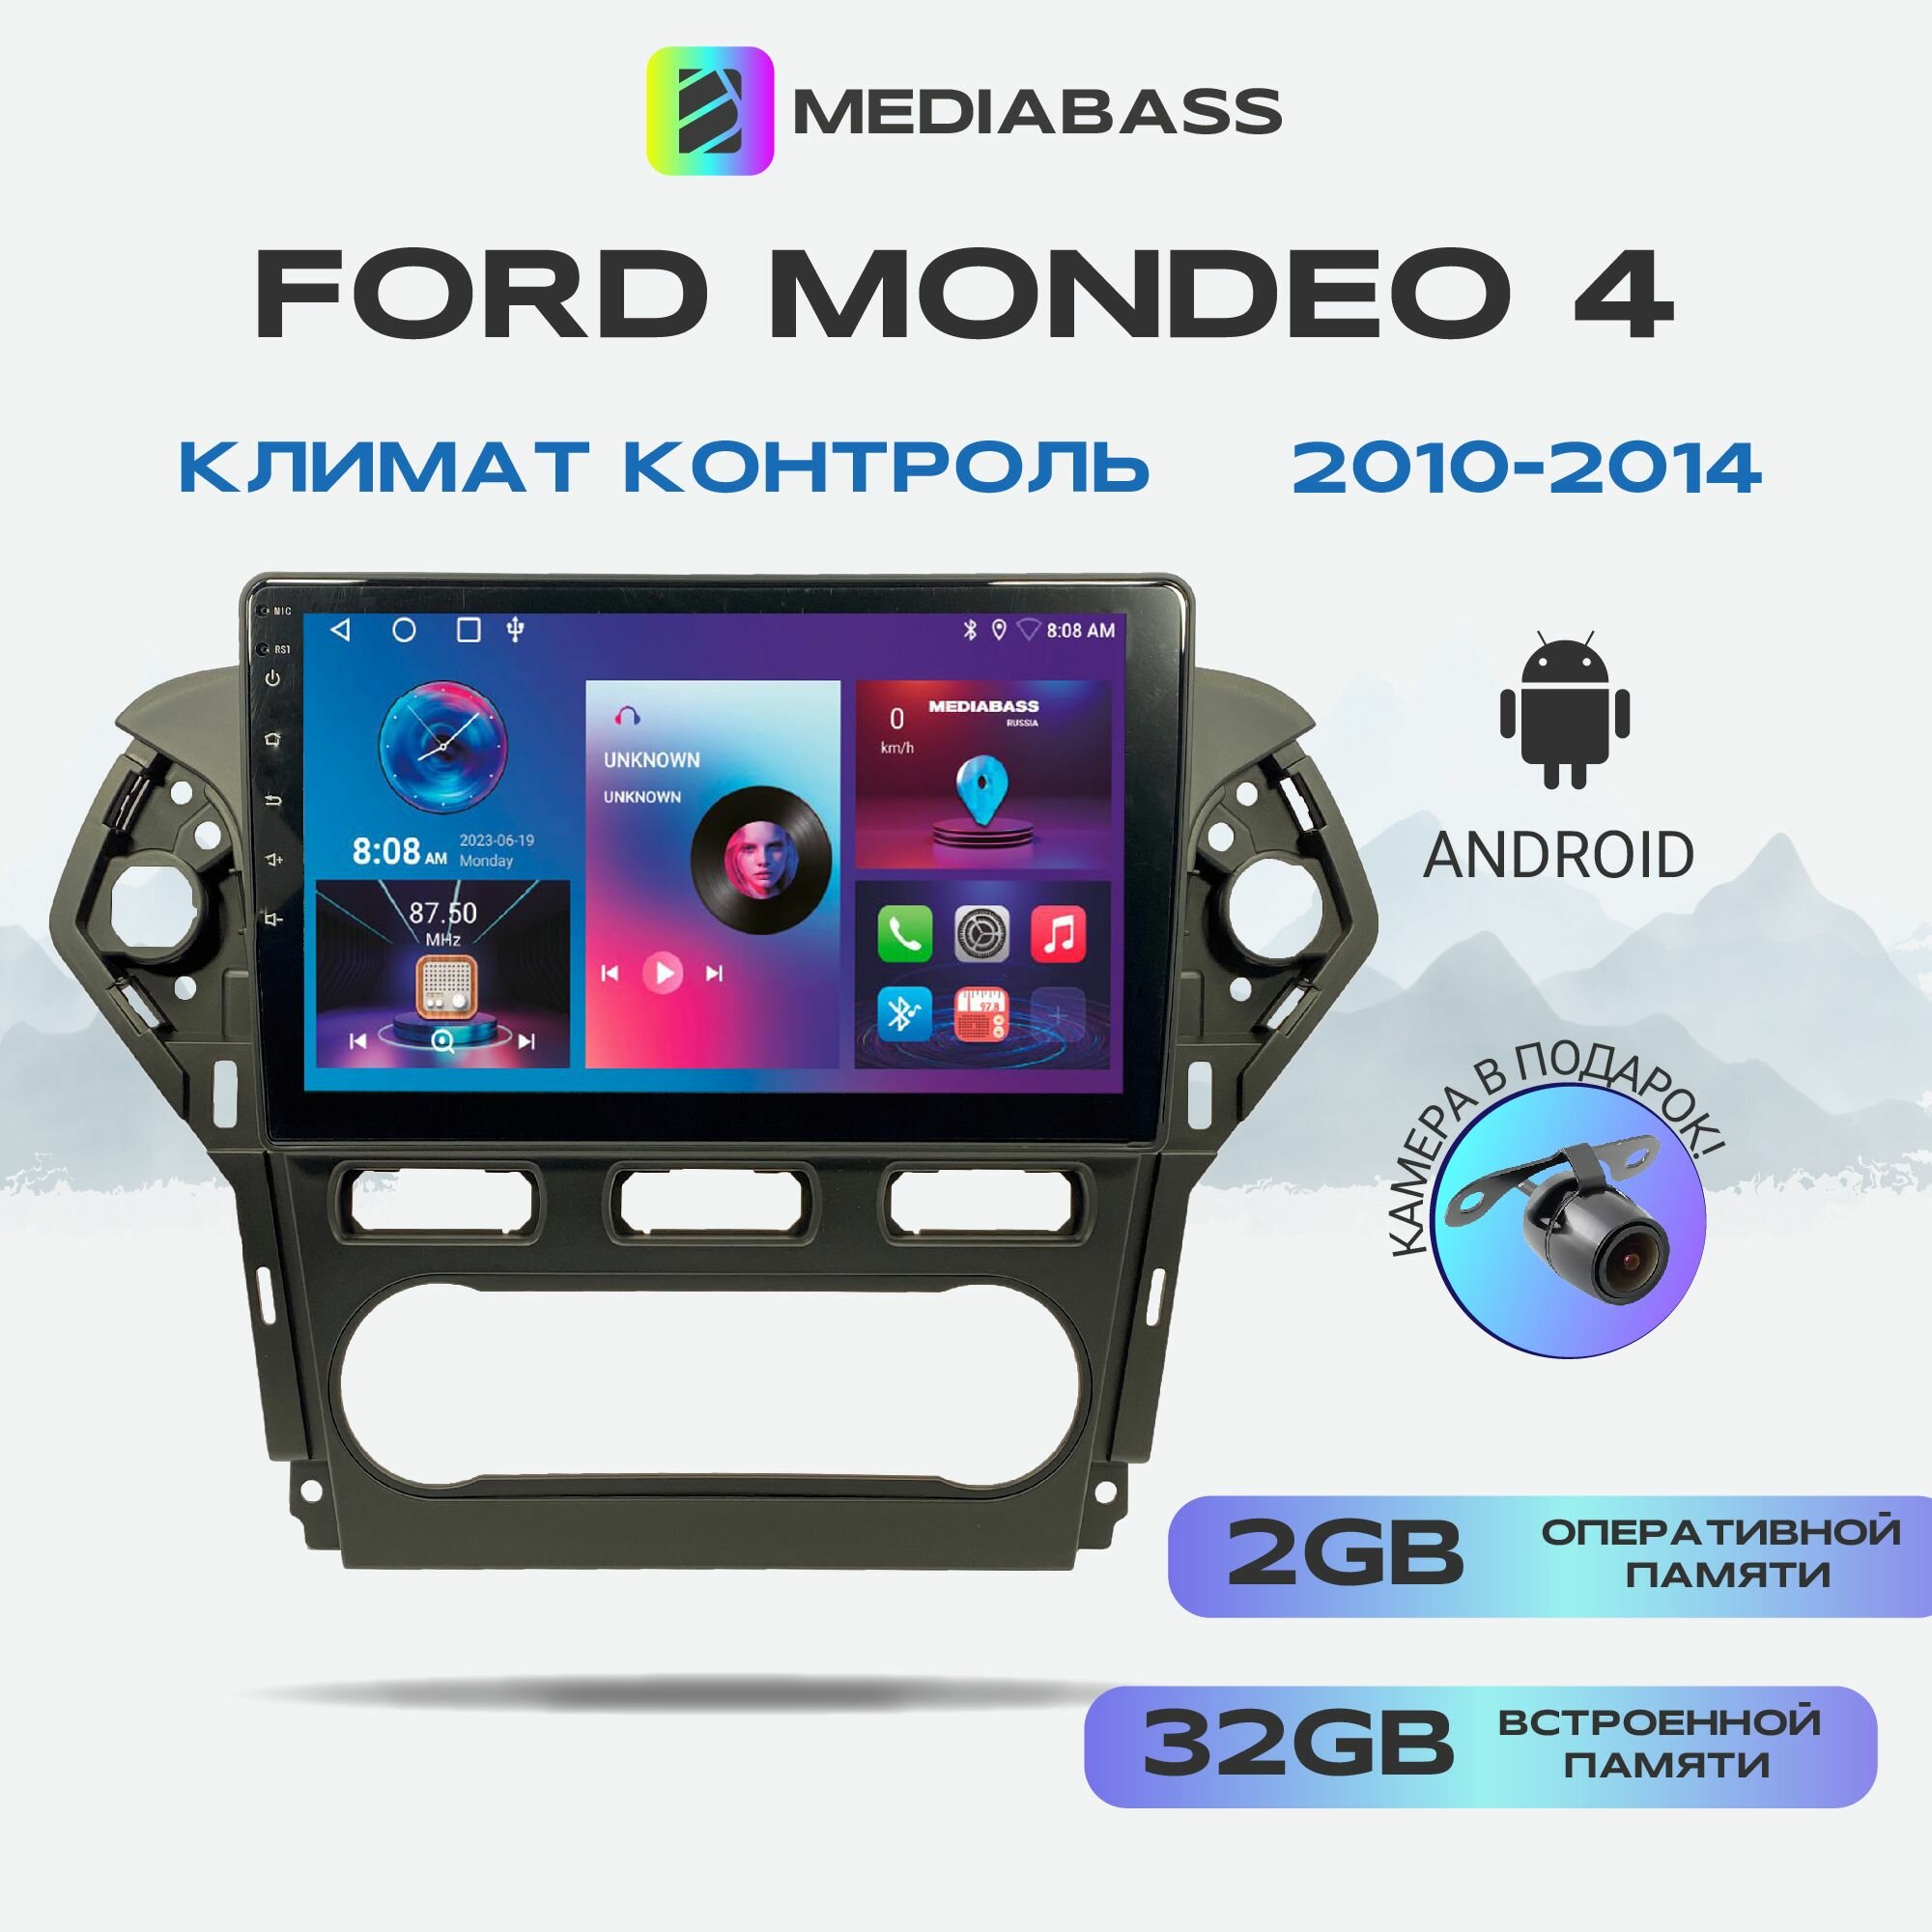 Автомагнитола Mediabass Ford Mondeo 4 2010-2014 Климат контроль, Android 12, 2/32ГБ, 4-ядерный процессор, QLED экран с разрешением 1280*720, чип-усилитель YD7388 / Форд Мондео 4